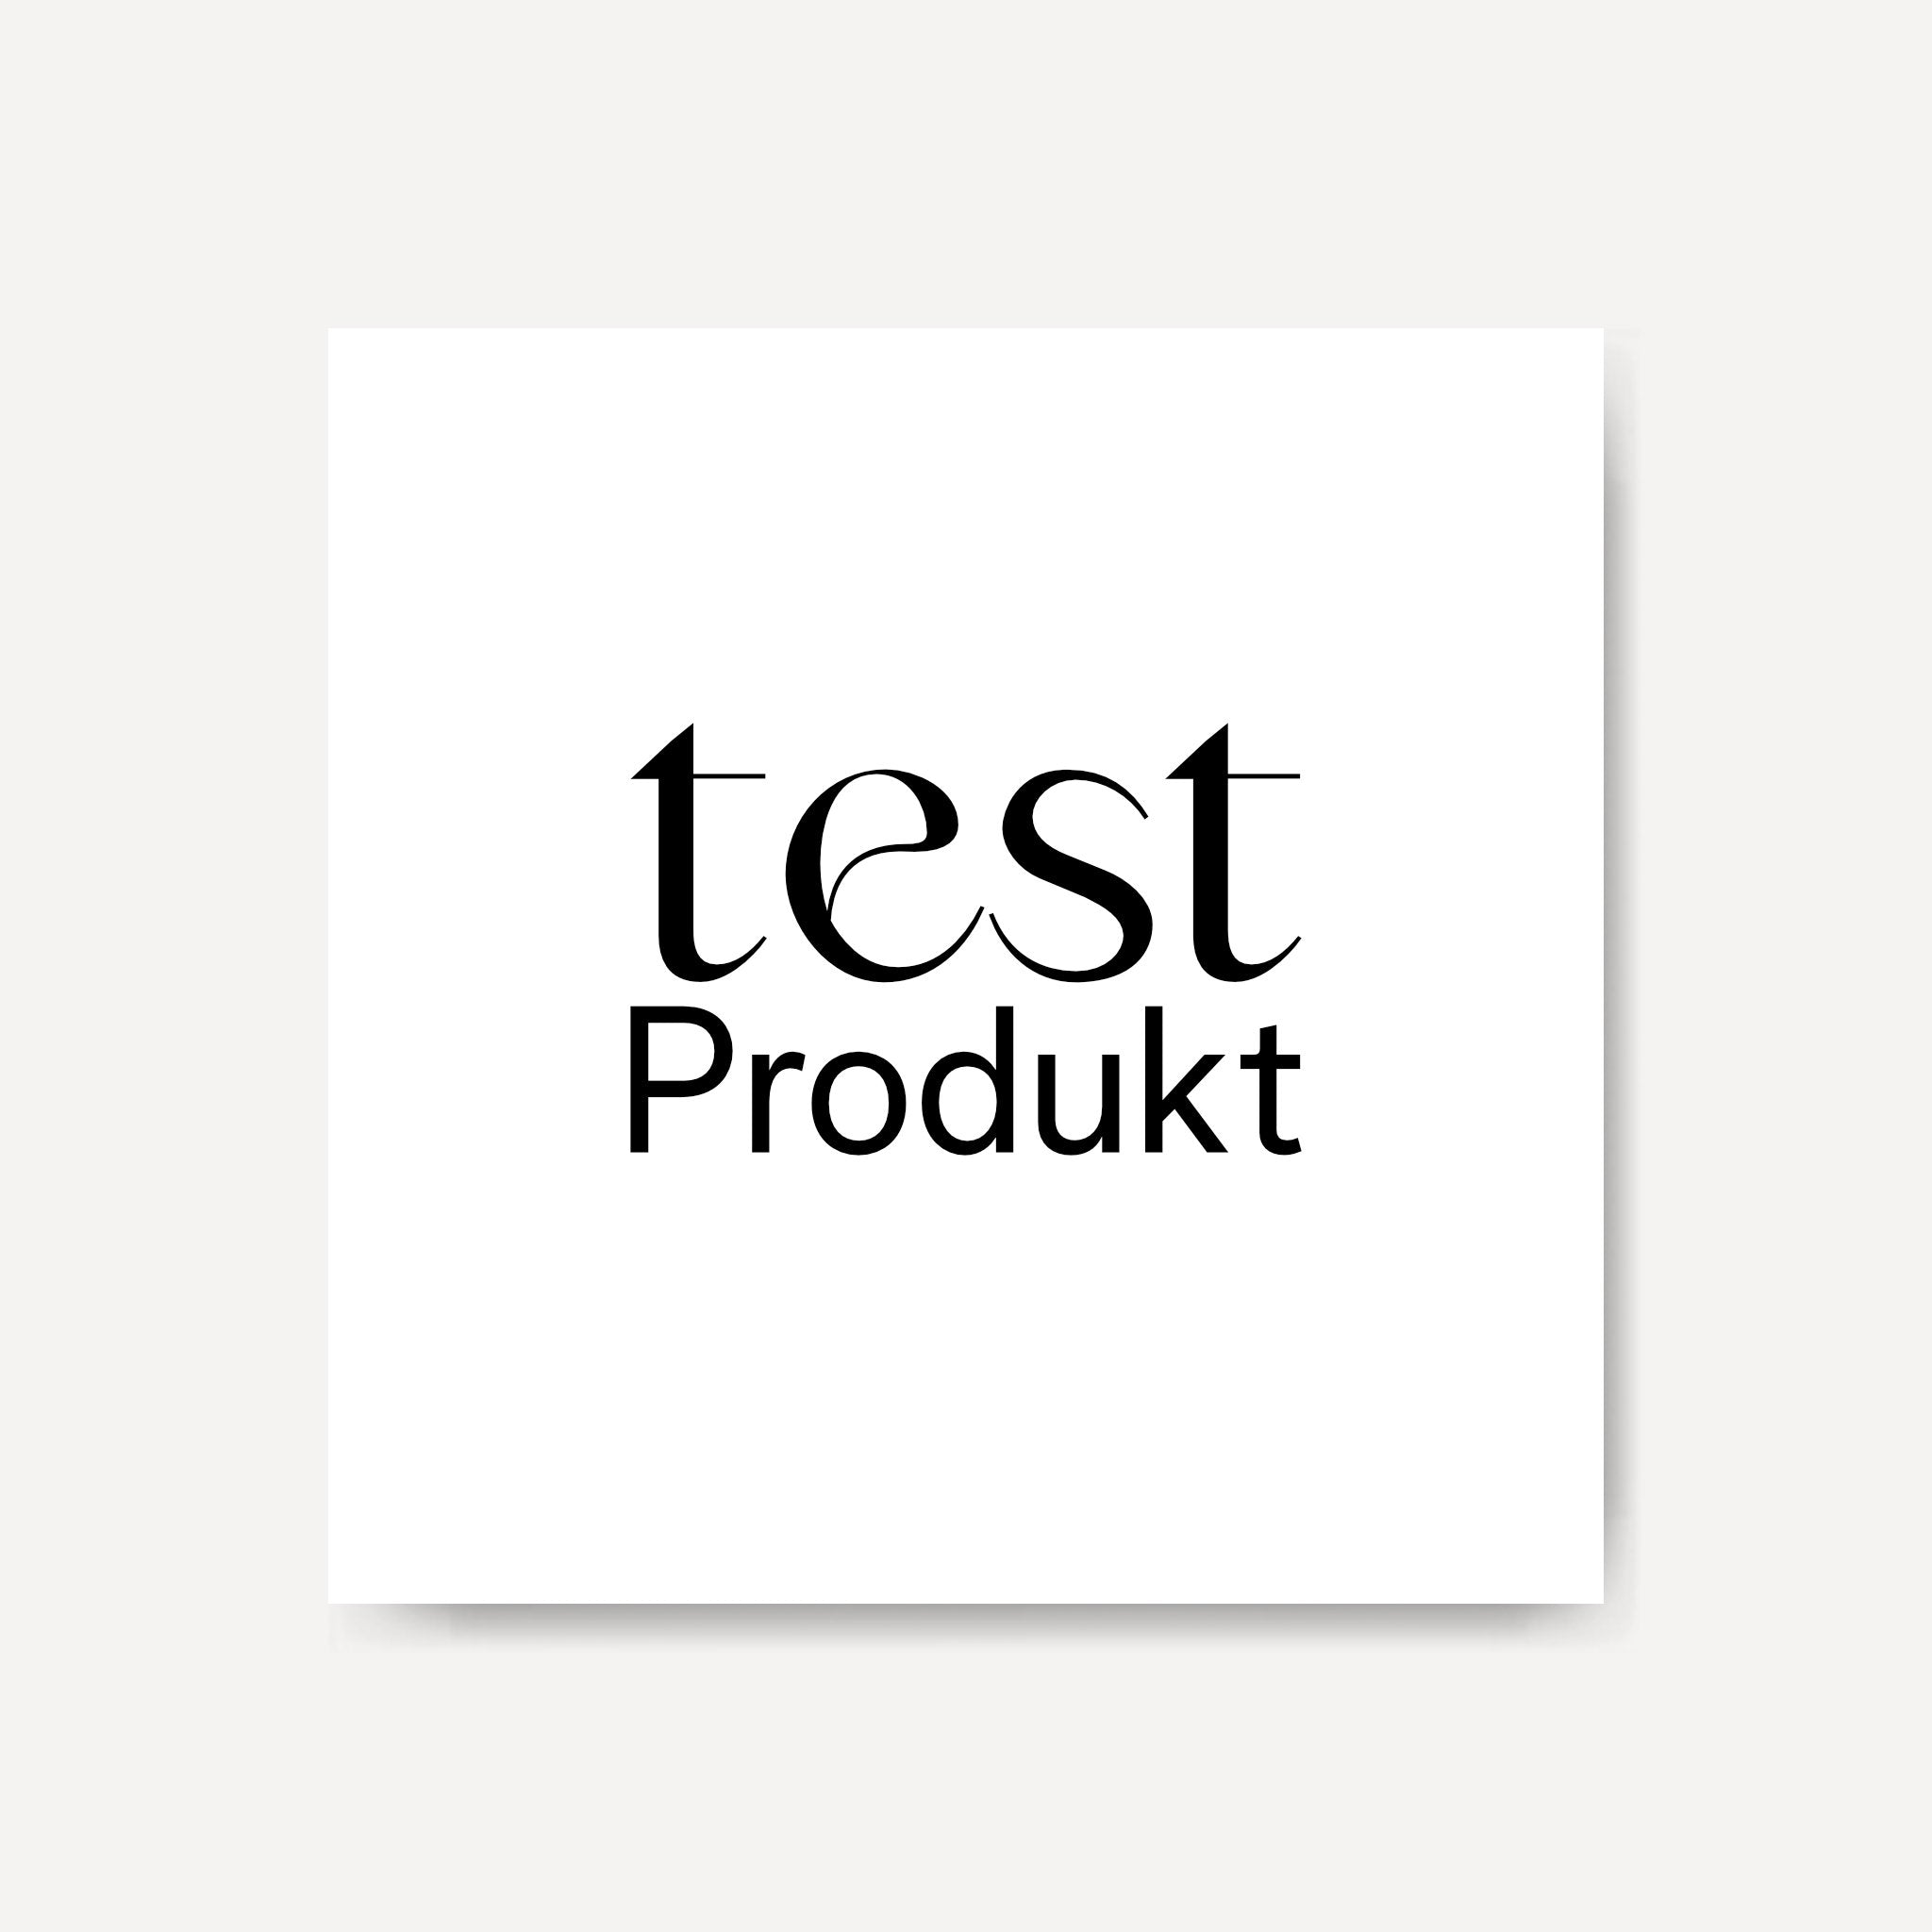 Testprodukt_01de1923-8a8a-42fd-8088-09ab54a420c6.jpg